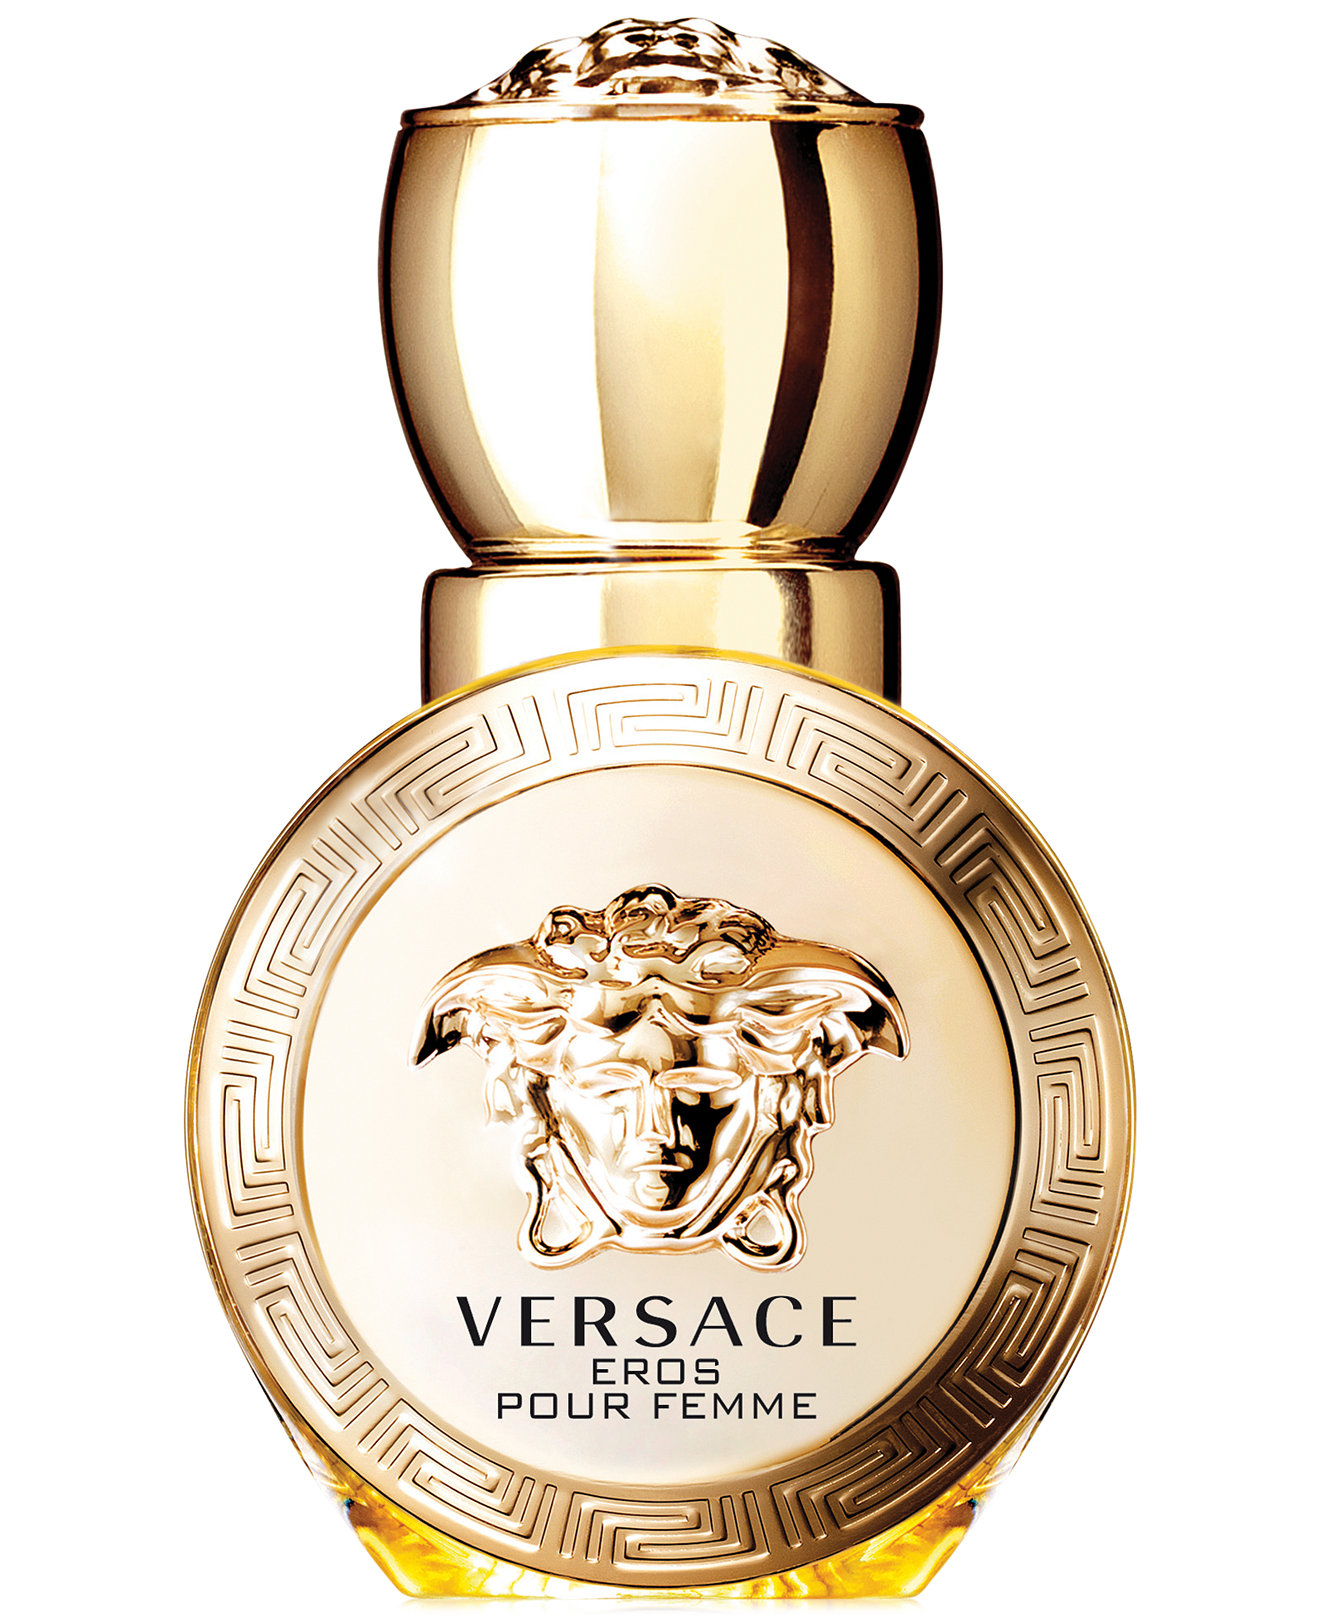 Eros Pour Femme – Versace Eau Parfum